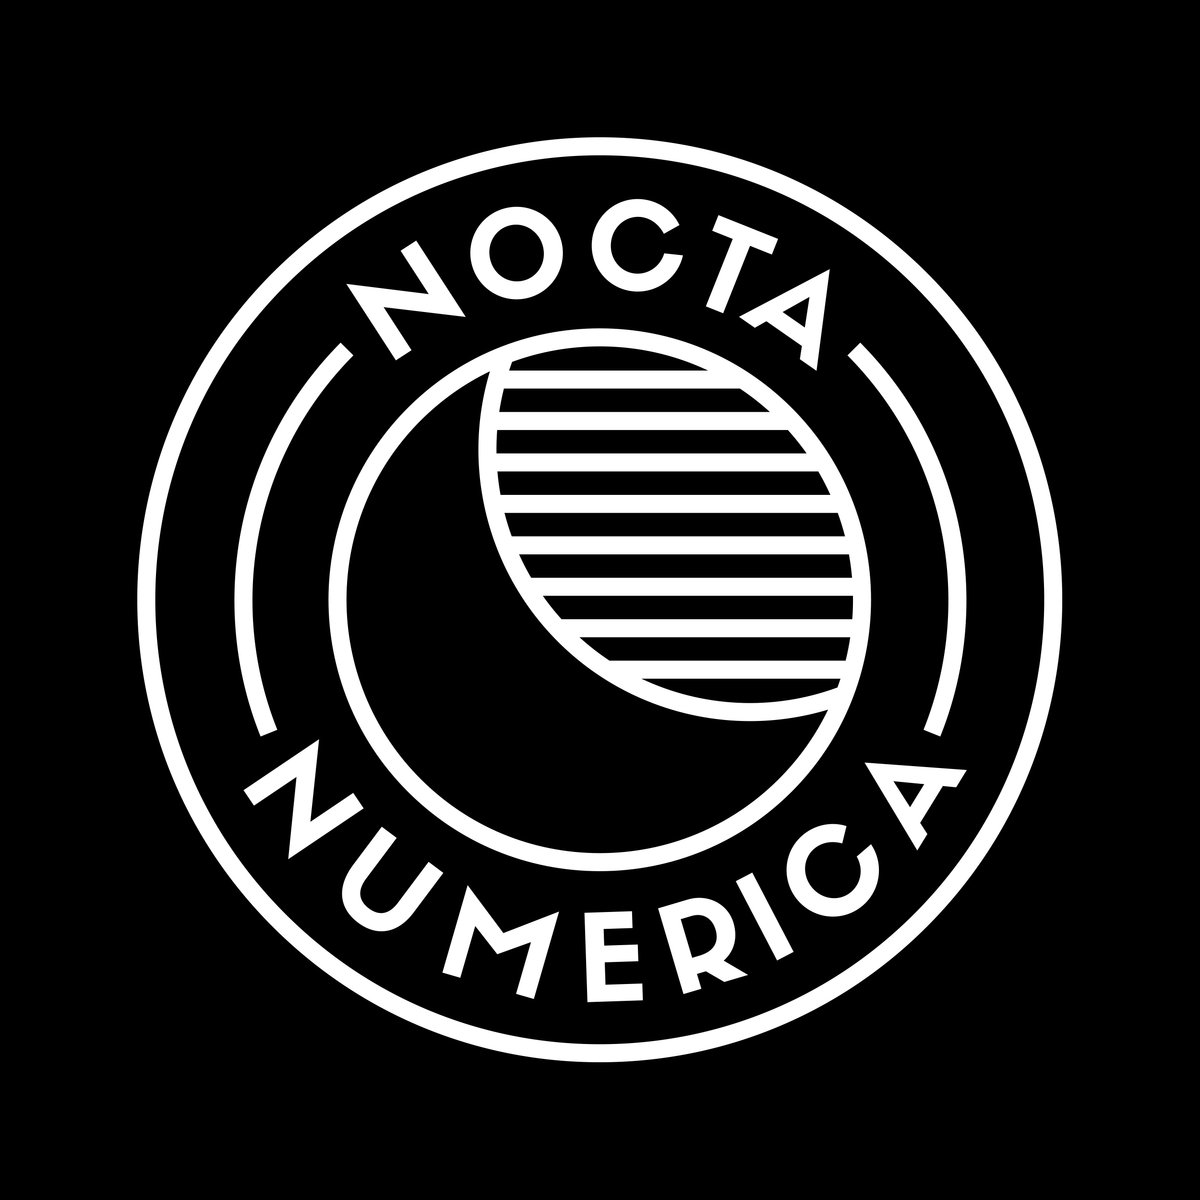 Nocta Numerica - Disquaire Day 2016